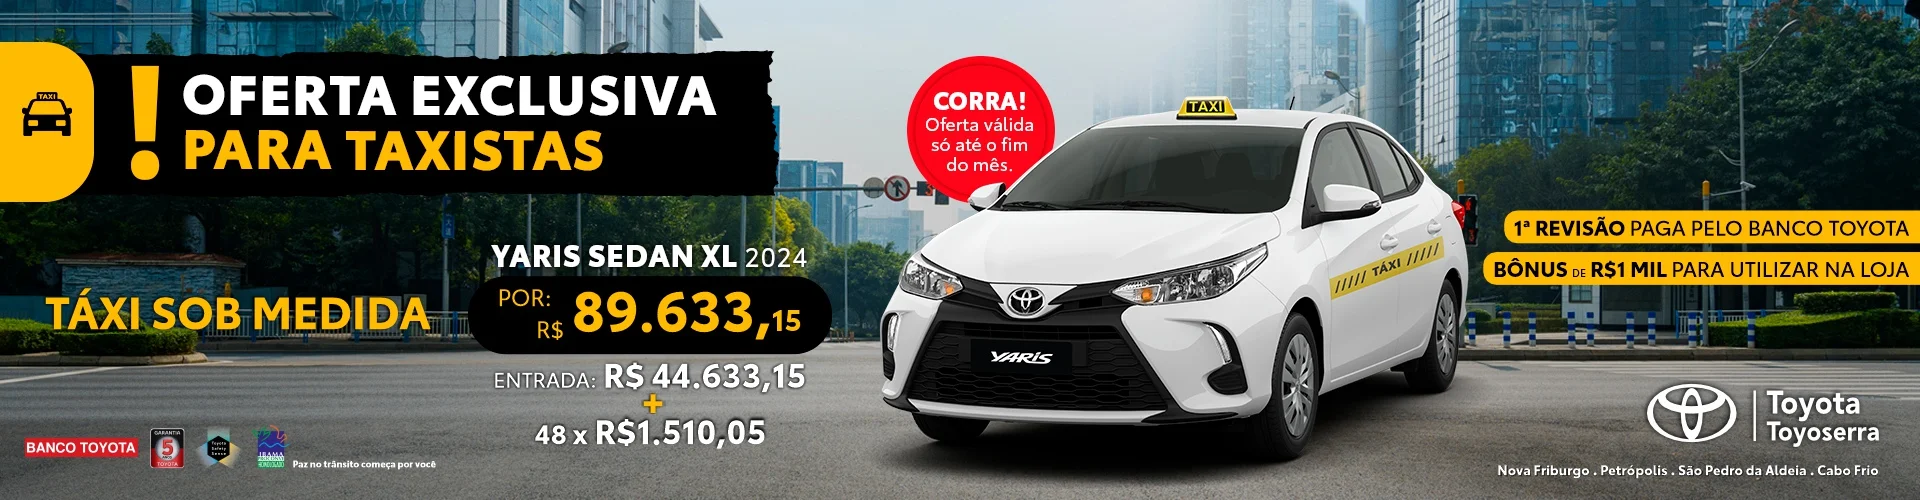 Veículos Toyota com ofertas exclusivas para taxistas